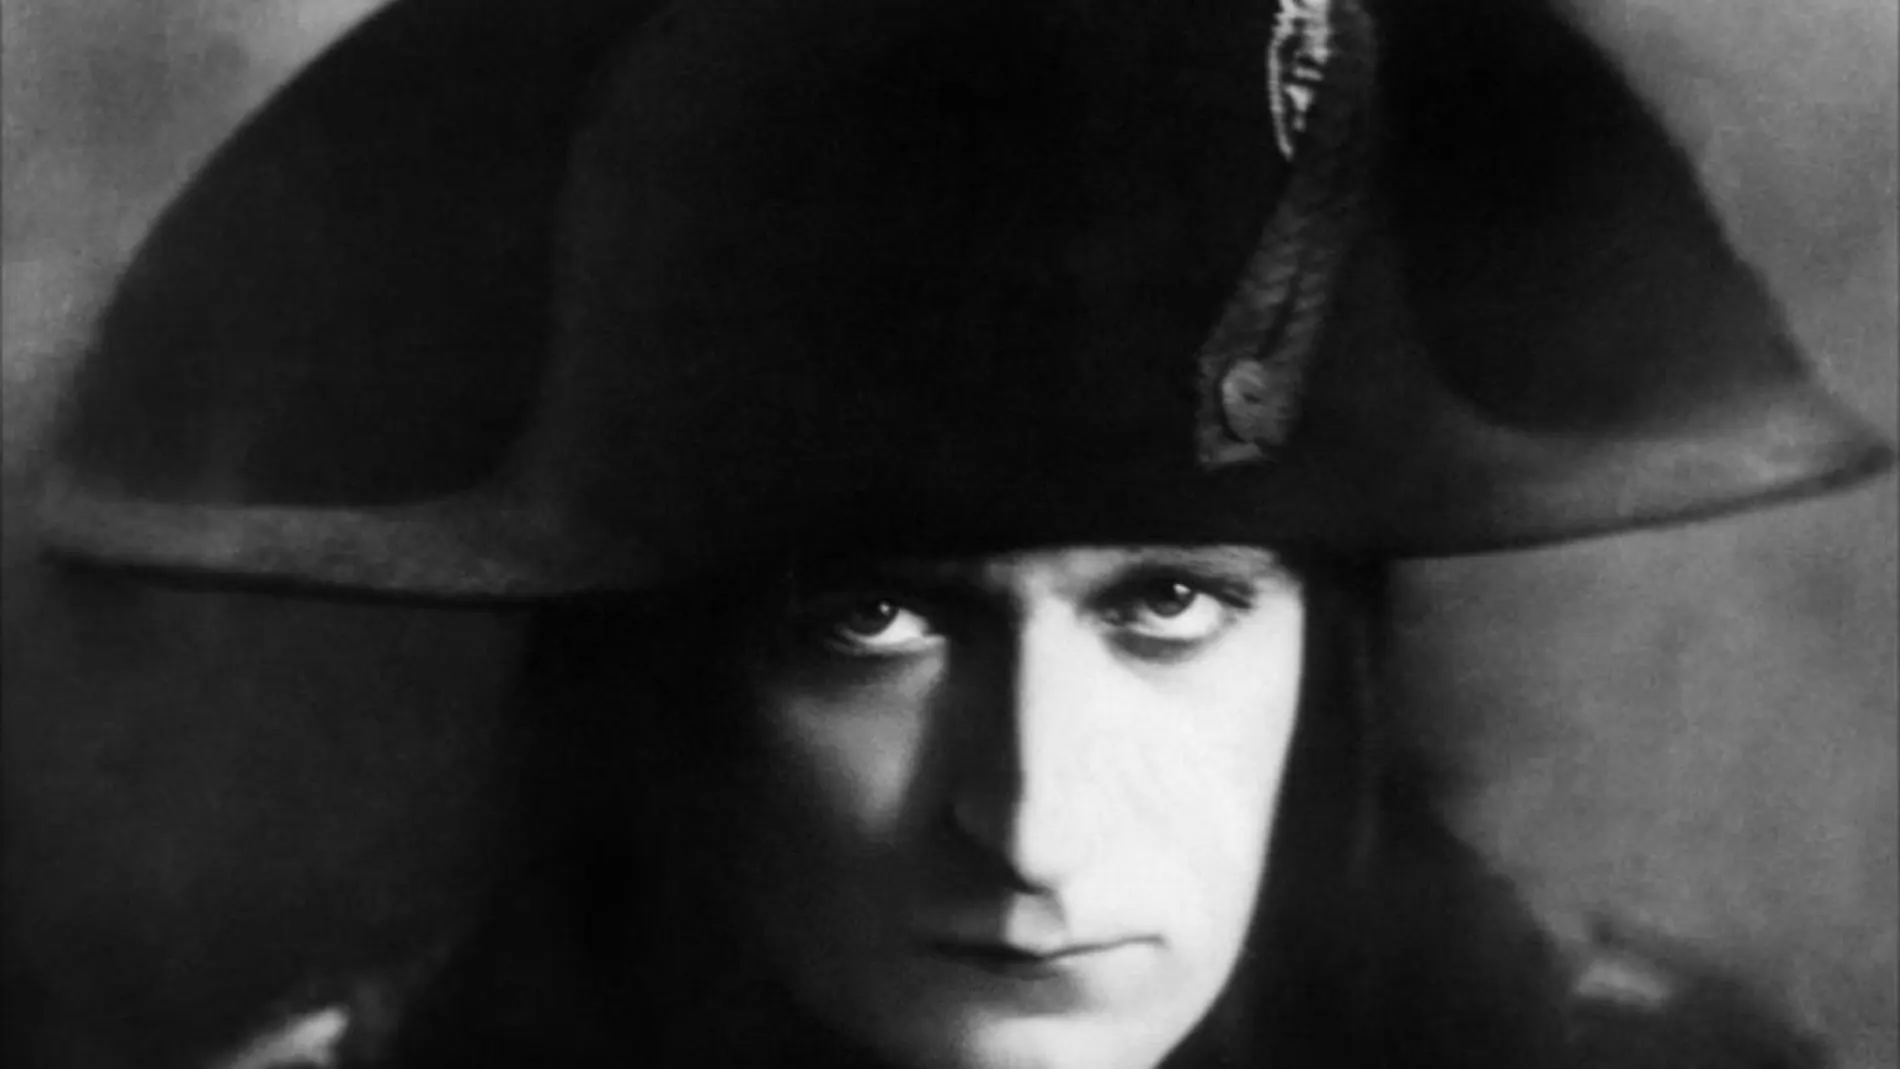 Fotograma de la obra maestra de Abel Gance «Napoleón», un clásico del cine mudo de 1927